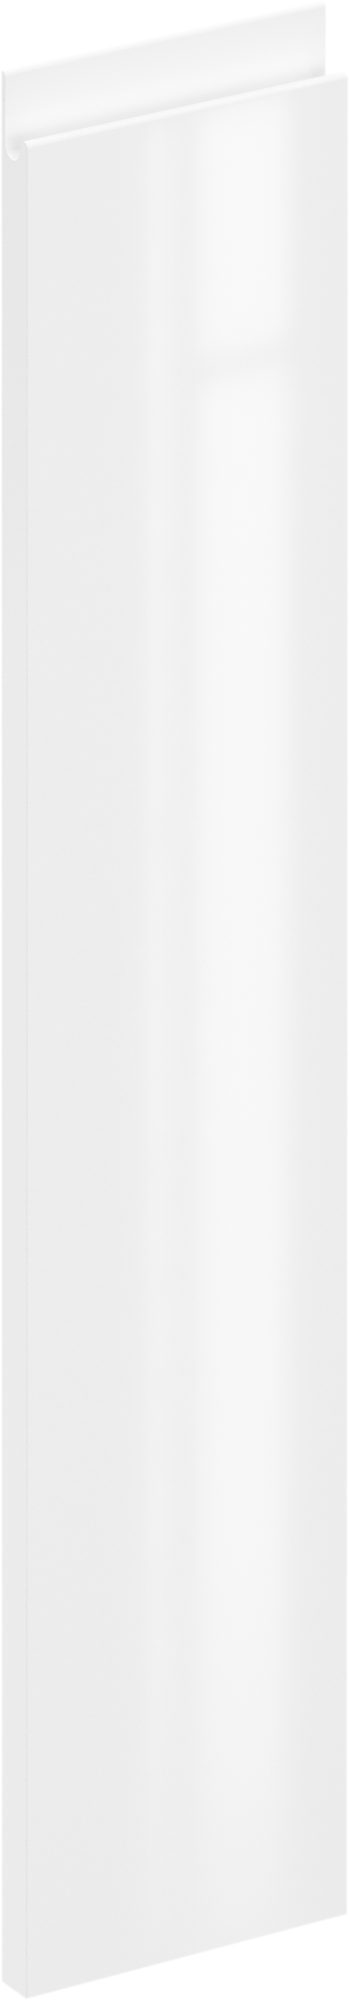 Puerta para mueble de cocina tokyo blanco brillo h 76.8 x l 15 cm